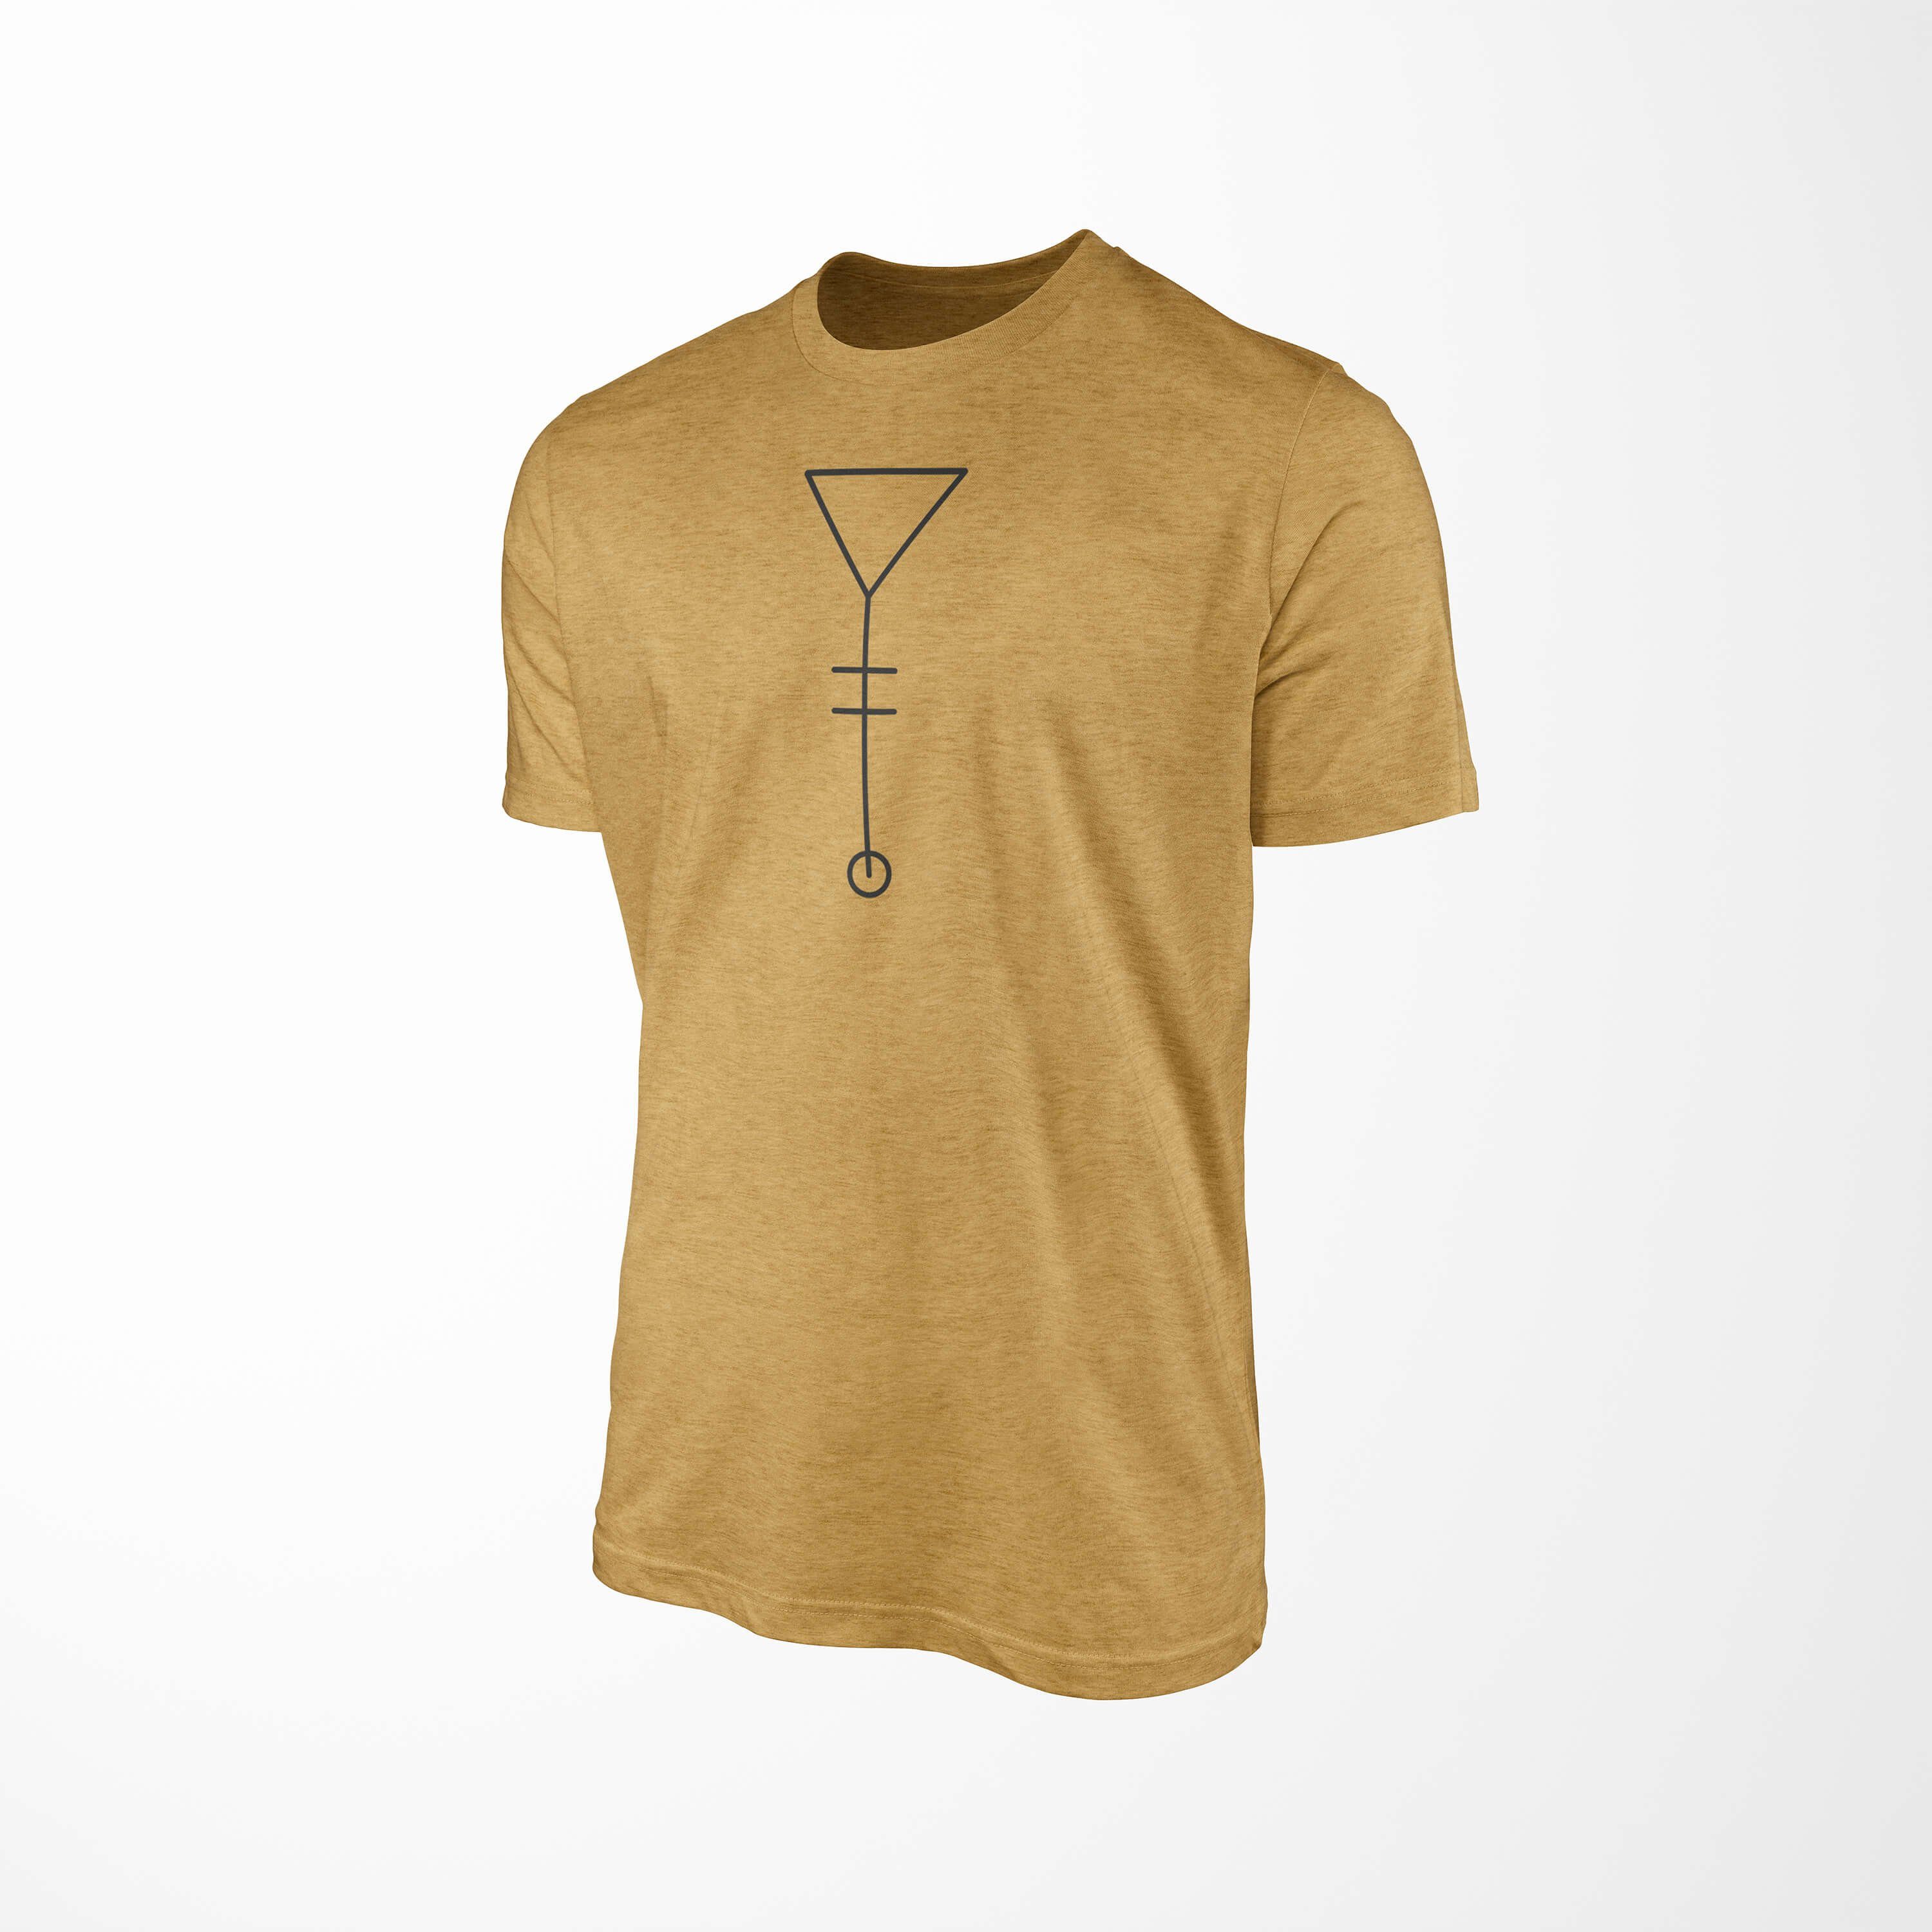 T-Shirt T-Shirt Struktur Antique Serie No.0024 feine Art Sinus angenehmer Alchemy Premium Symbole Gold Tragekomfort